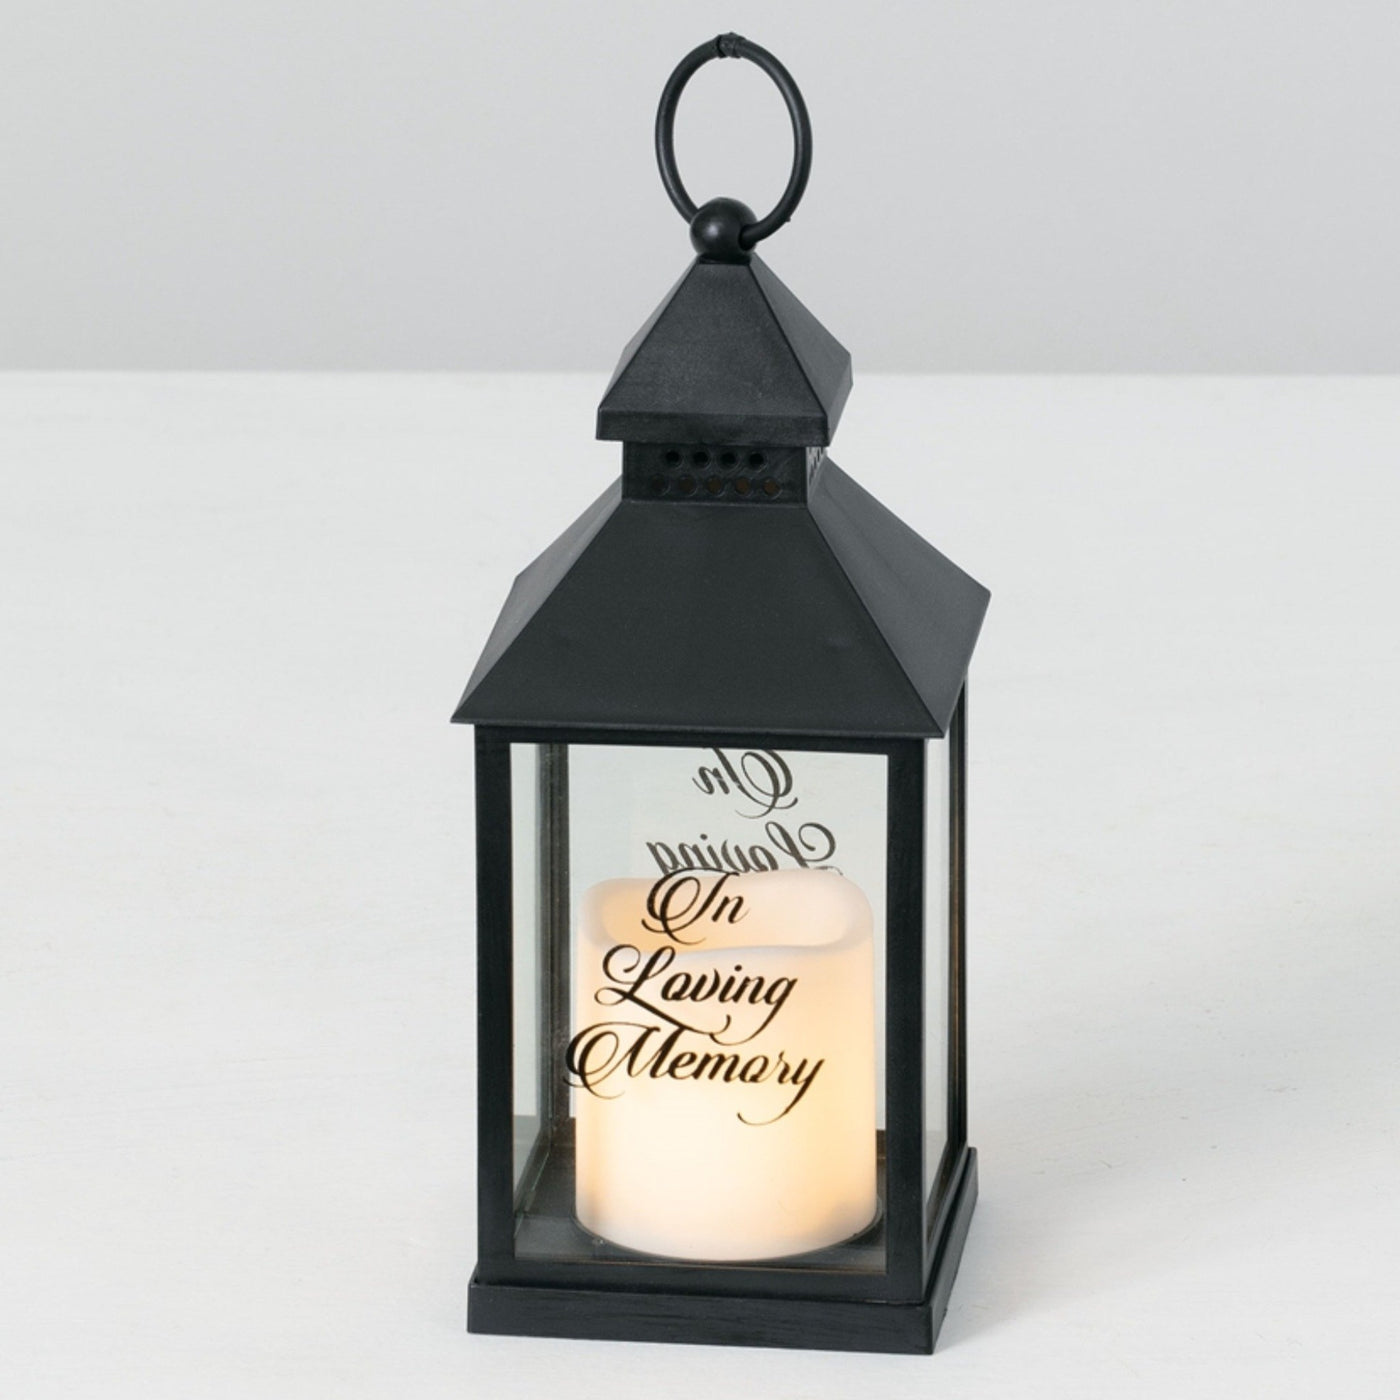 In Loving Memory Mini Lantern